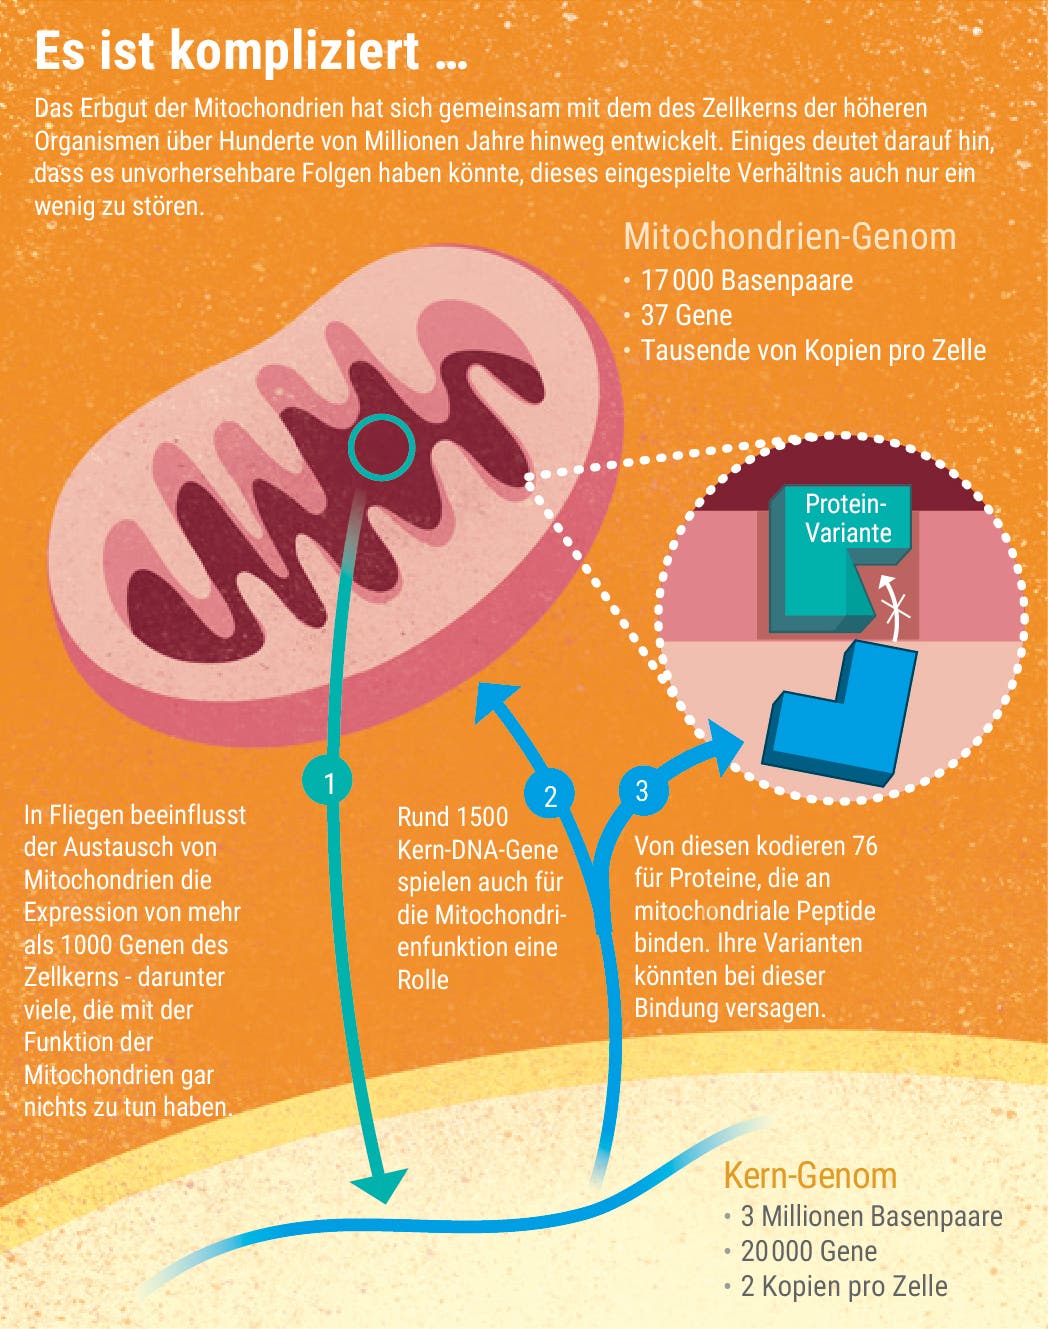 Das Verhältnis von Mitochondrien- und Kerngenom 